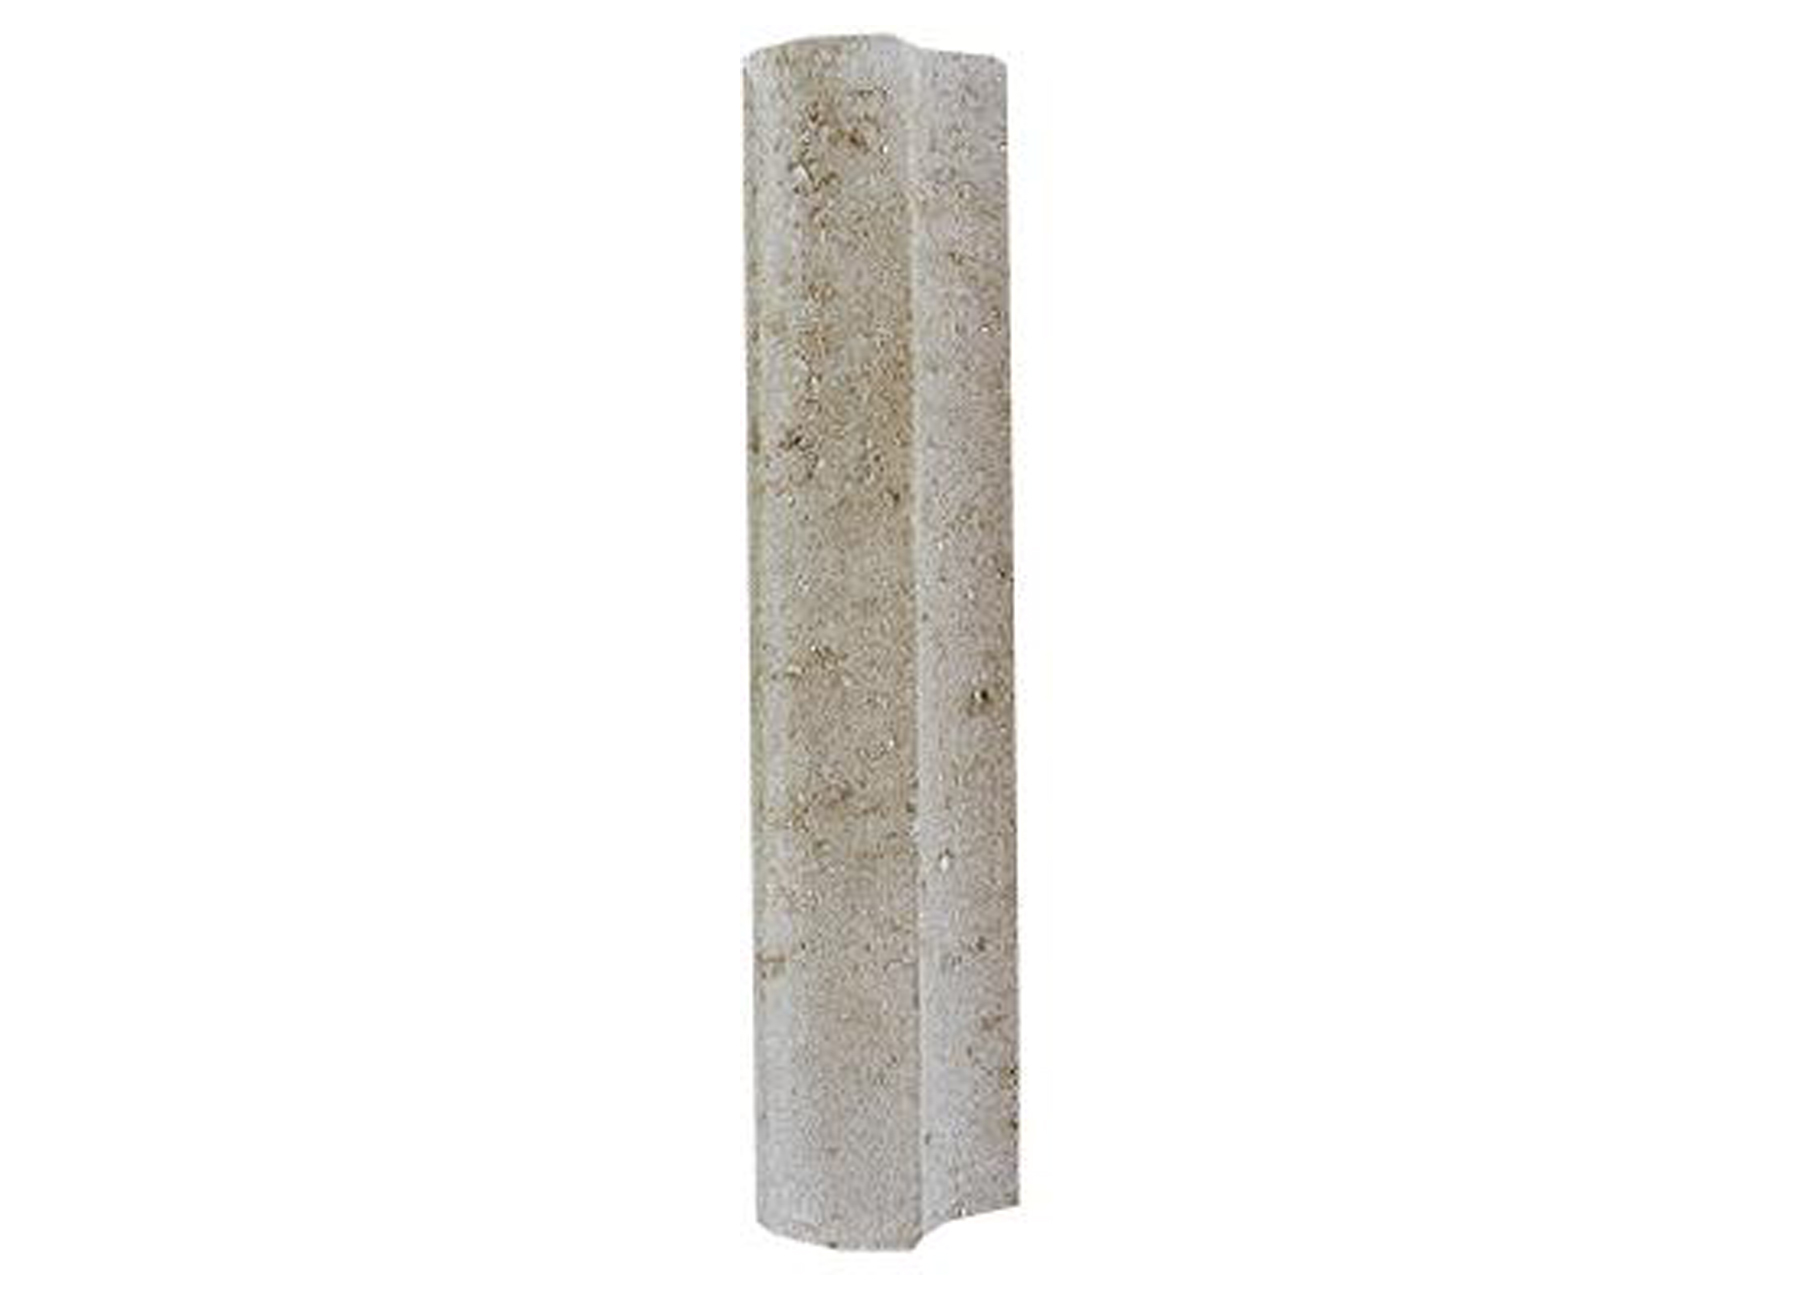 Ronde Palissade Beton - terrasaanleg - - beton - ronde palissade